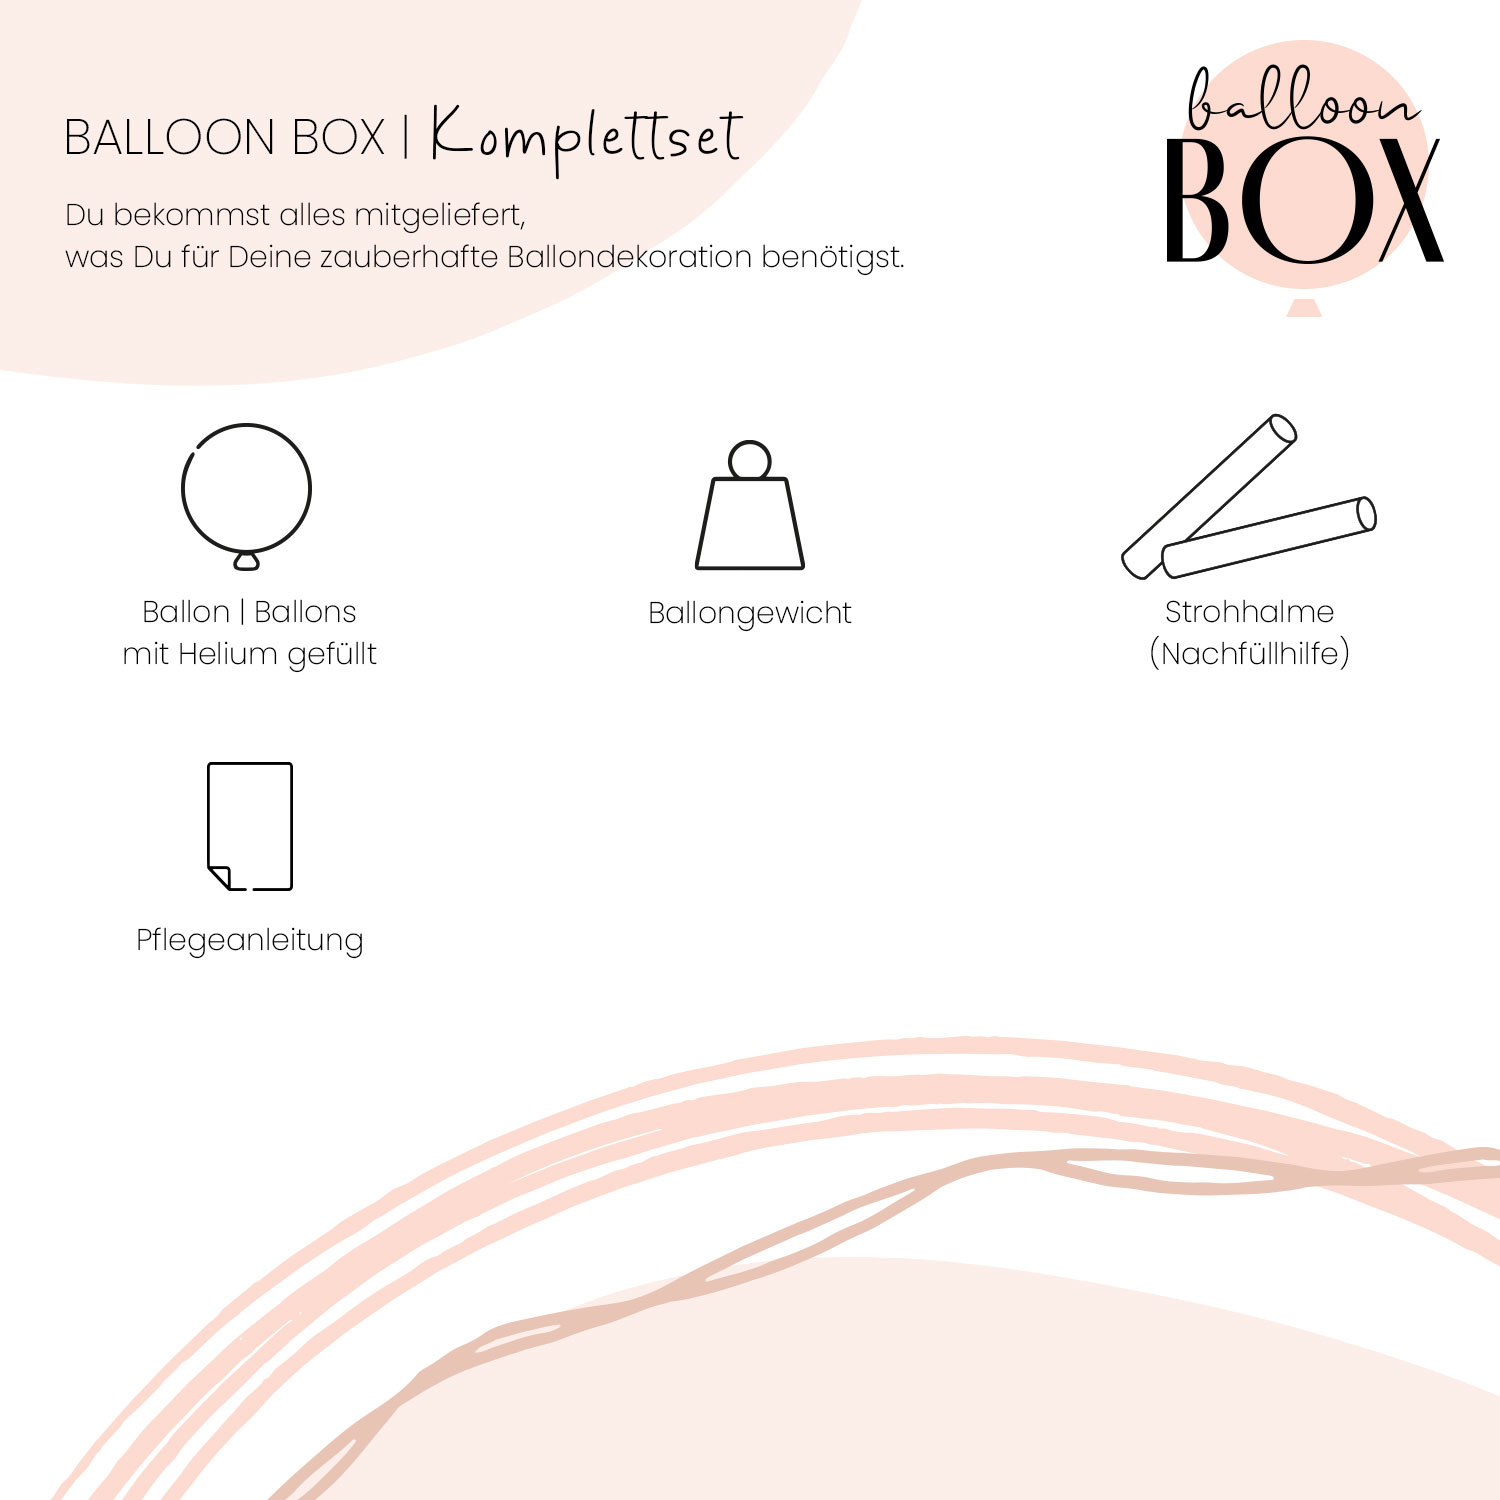 Heliumballon in a Box - Papa Du bist der Beste